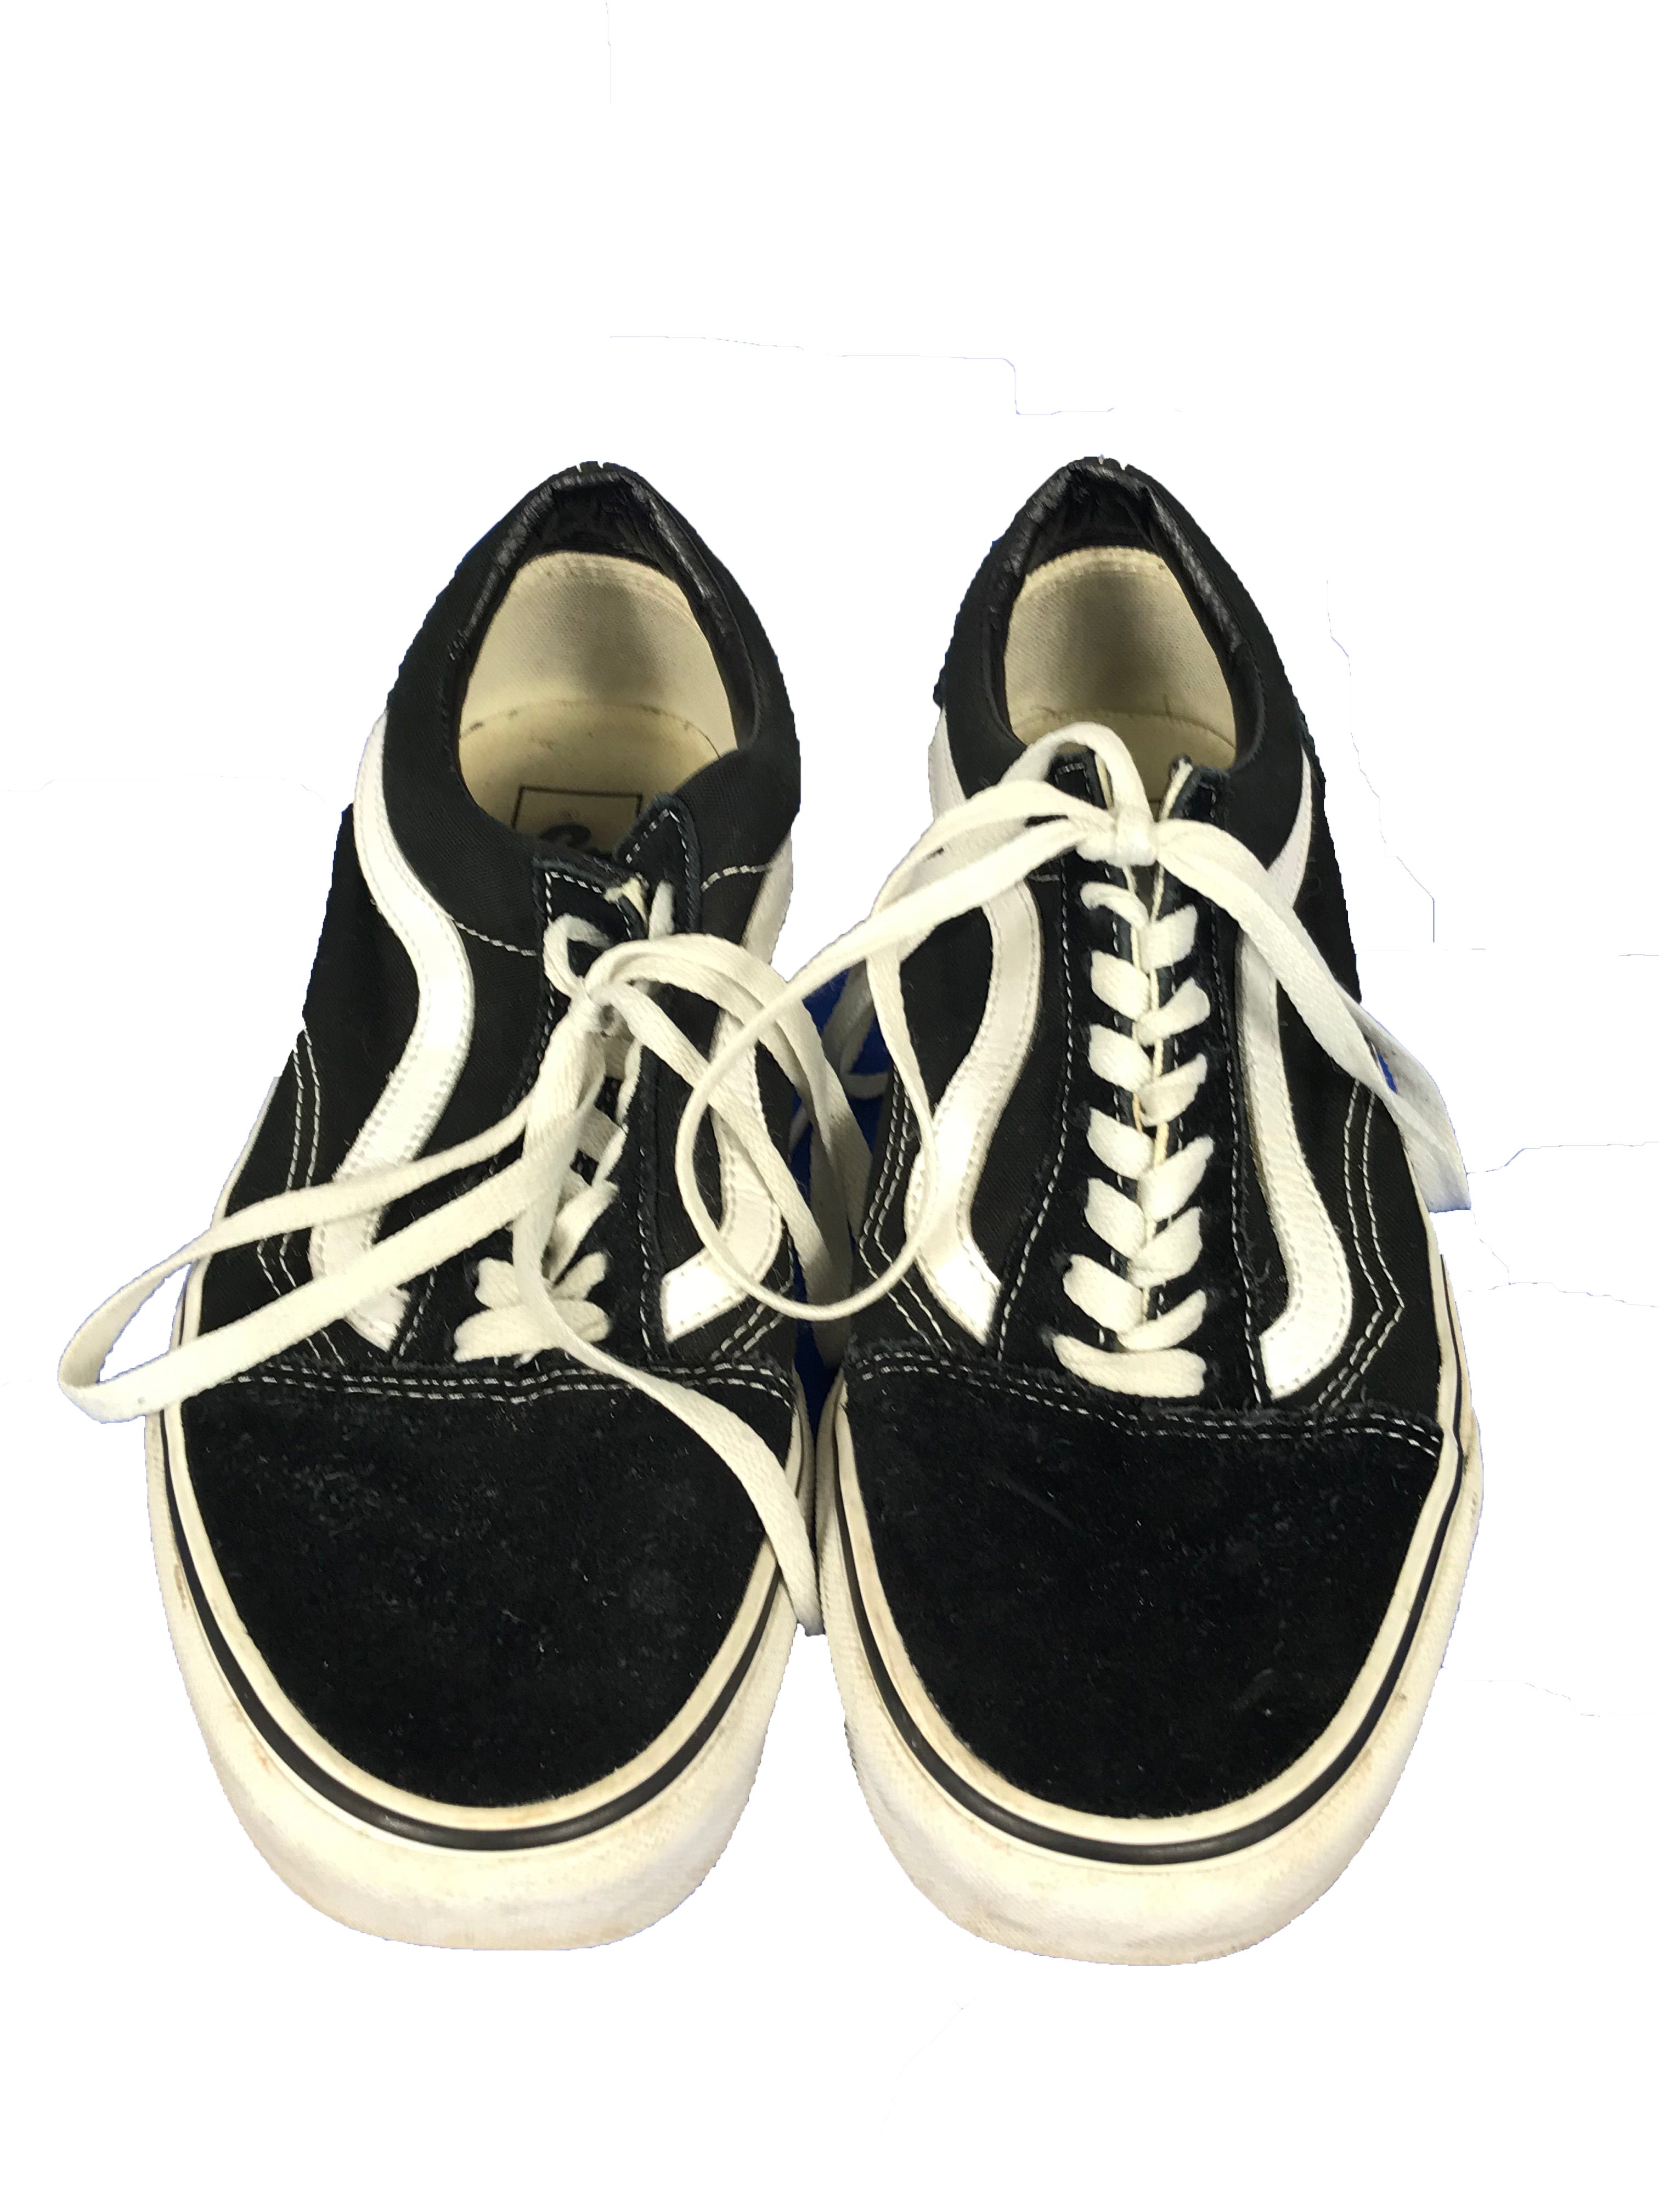 Vans Off The Wall Old Skool Black Low Top Sneaker Unisex Size 8.5/10